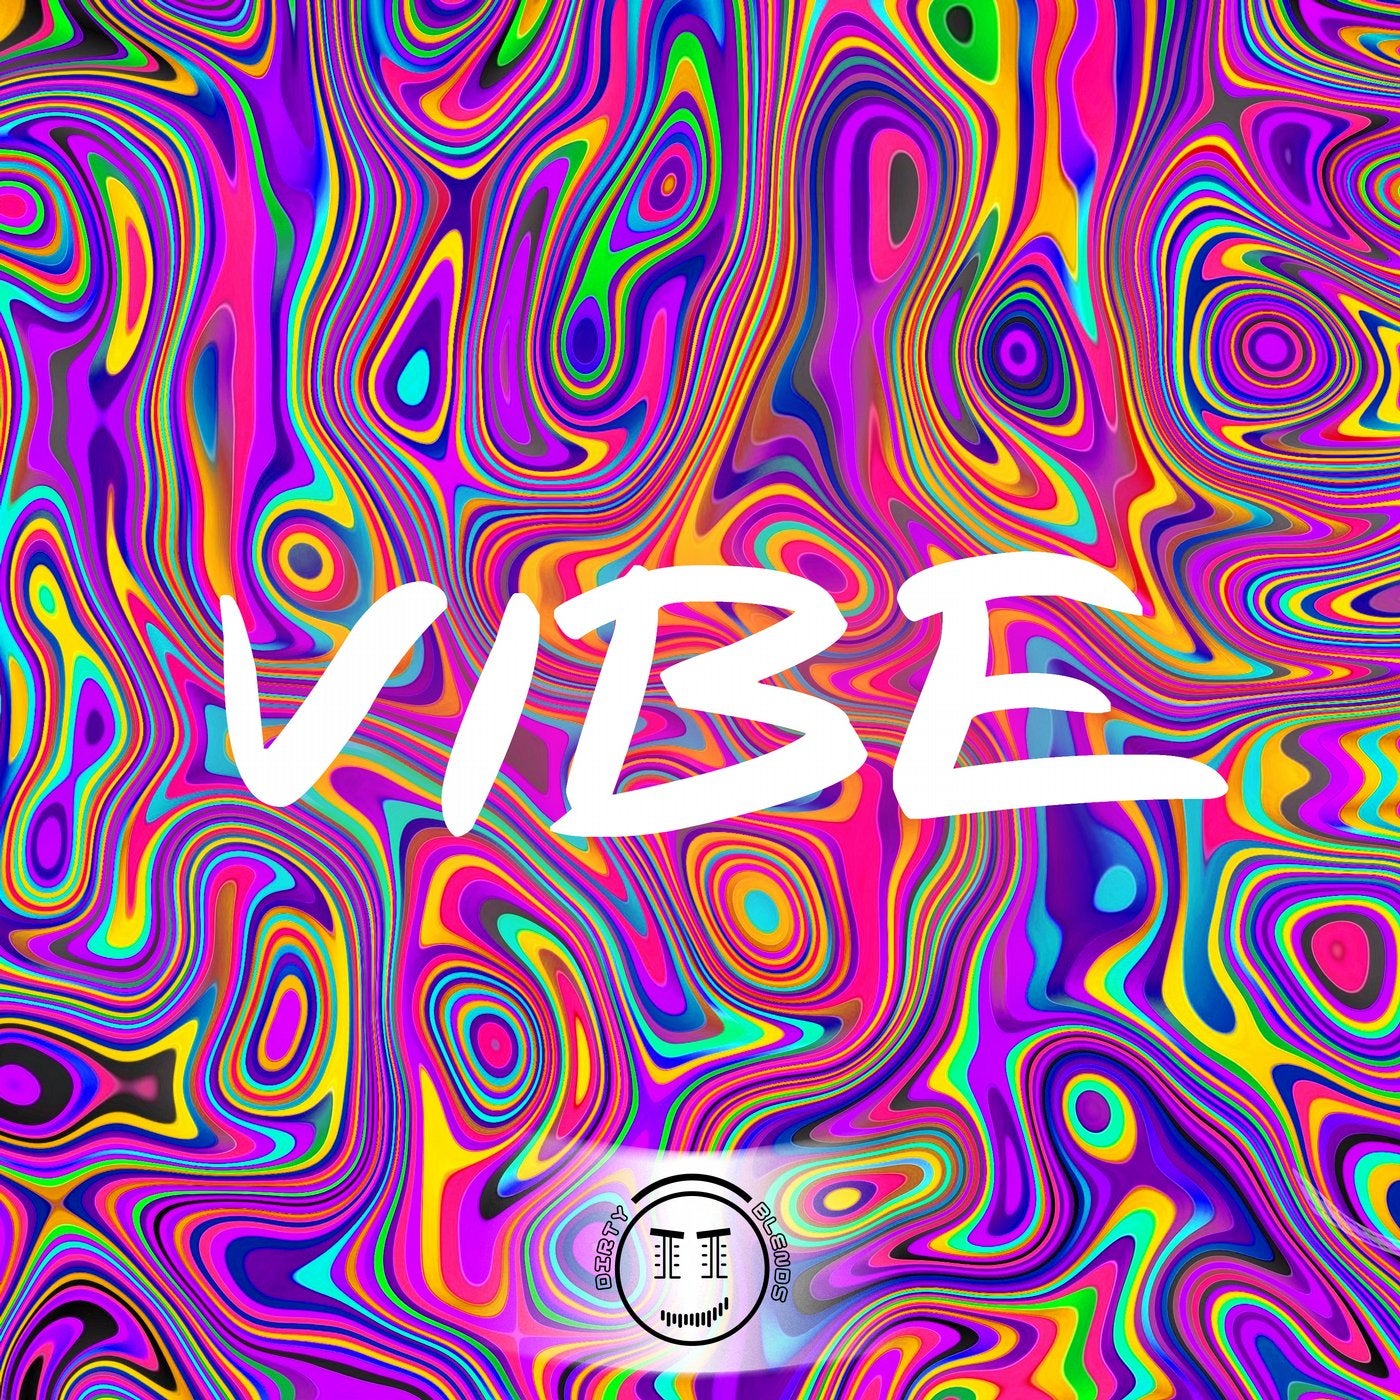 Vibe треки. Vibe. Vibe слово. Изображение Vibe. Vibe обложка для трека.